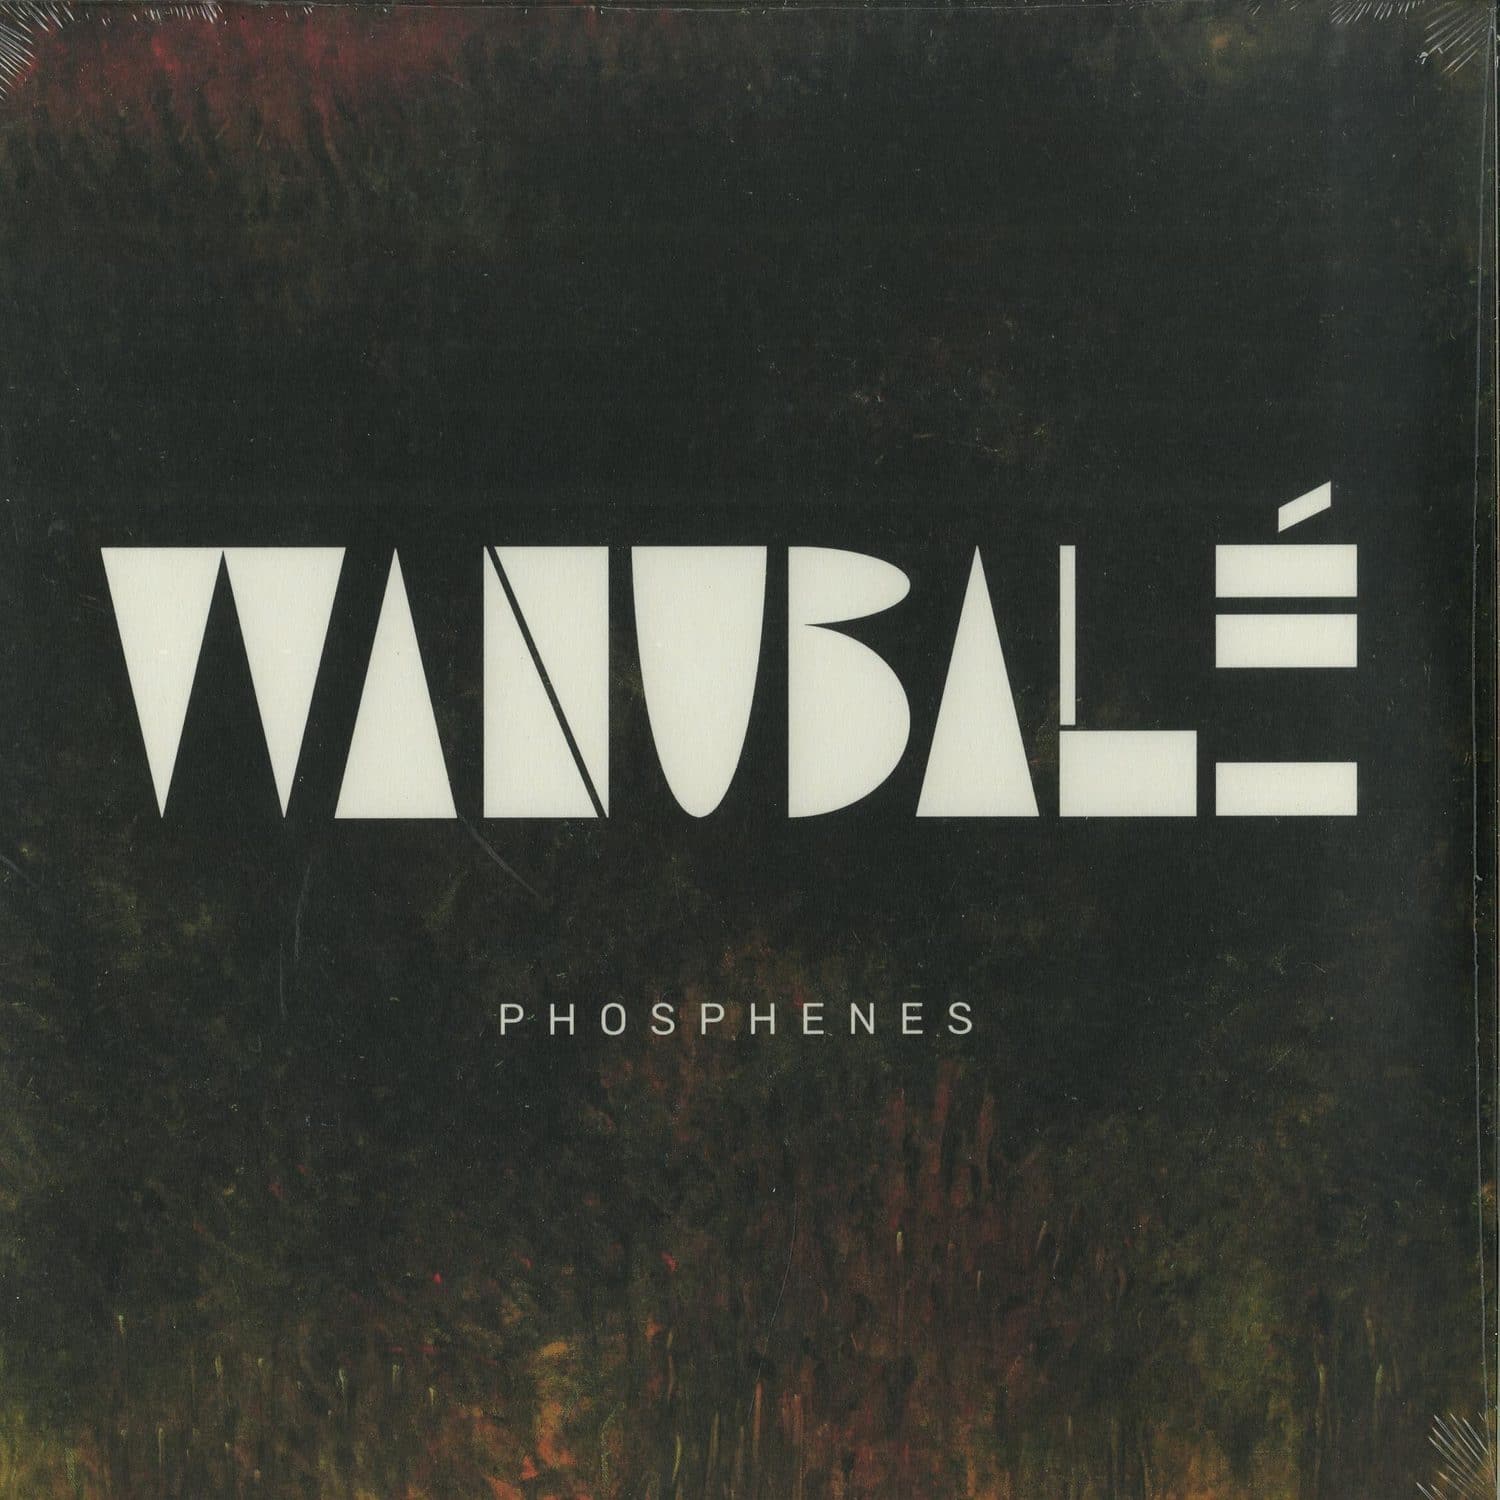 Wanubale - PHOSPHENES 